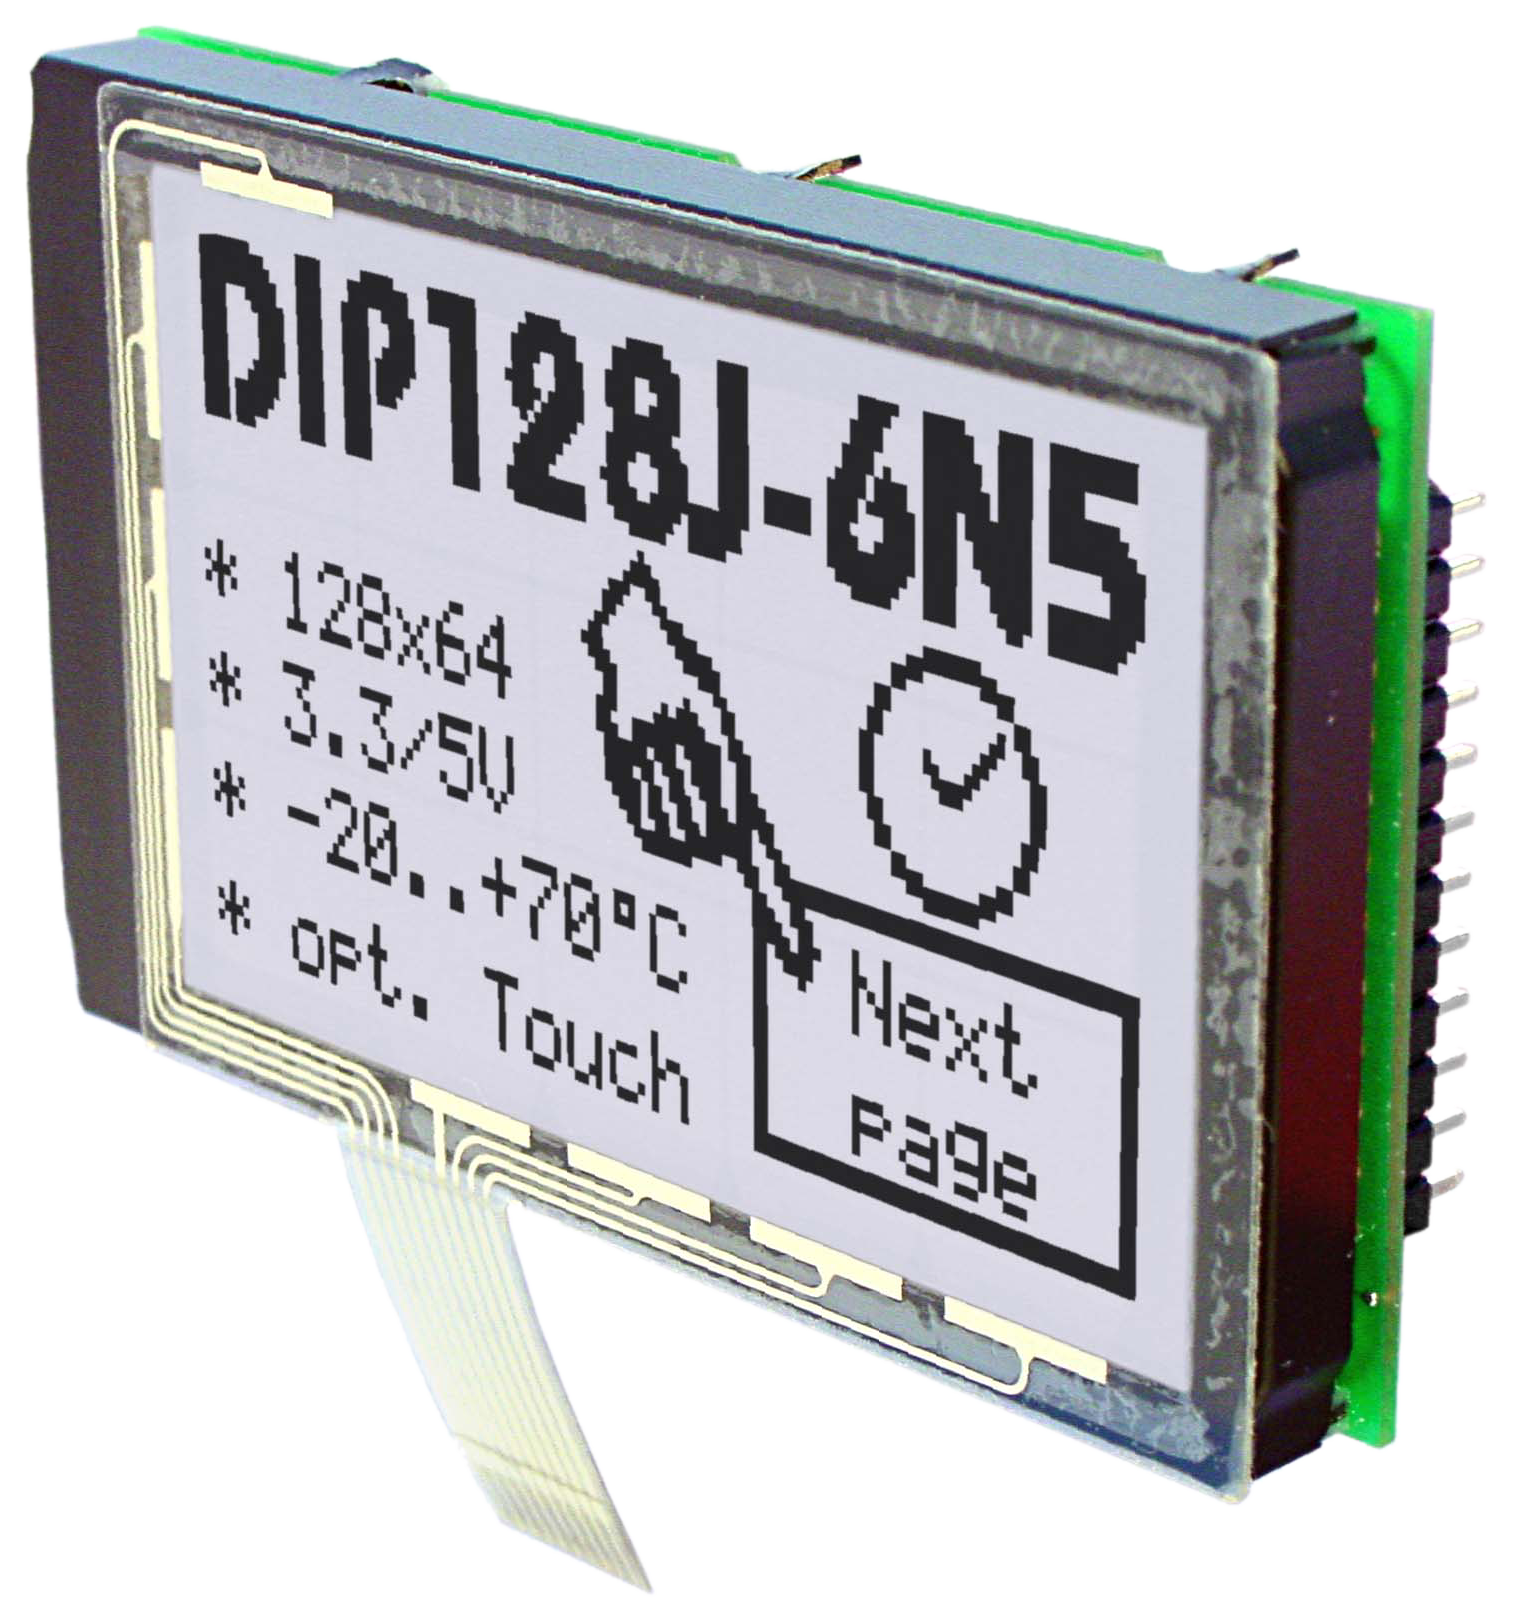 LCD Displays in Chip on Board (COB) TEchnik, hier EA DIP128 als Grafikdisplay mit 128x64 Pixeln